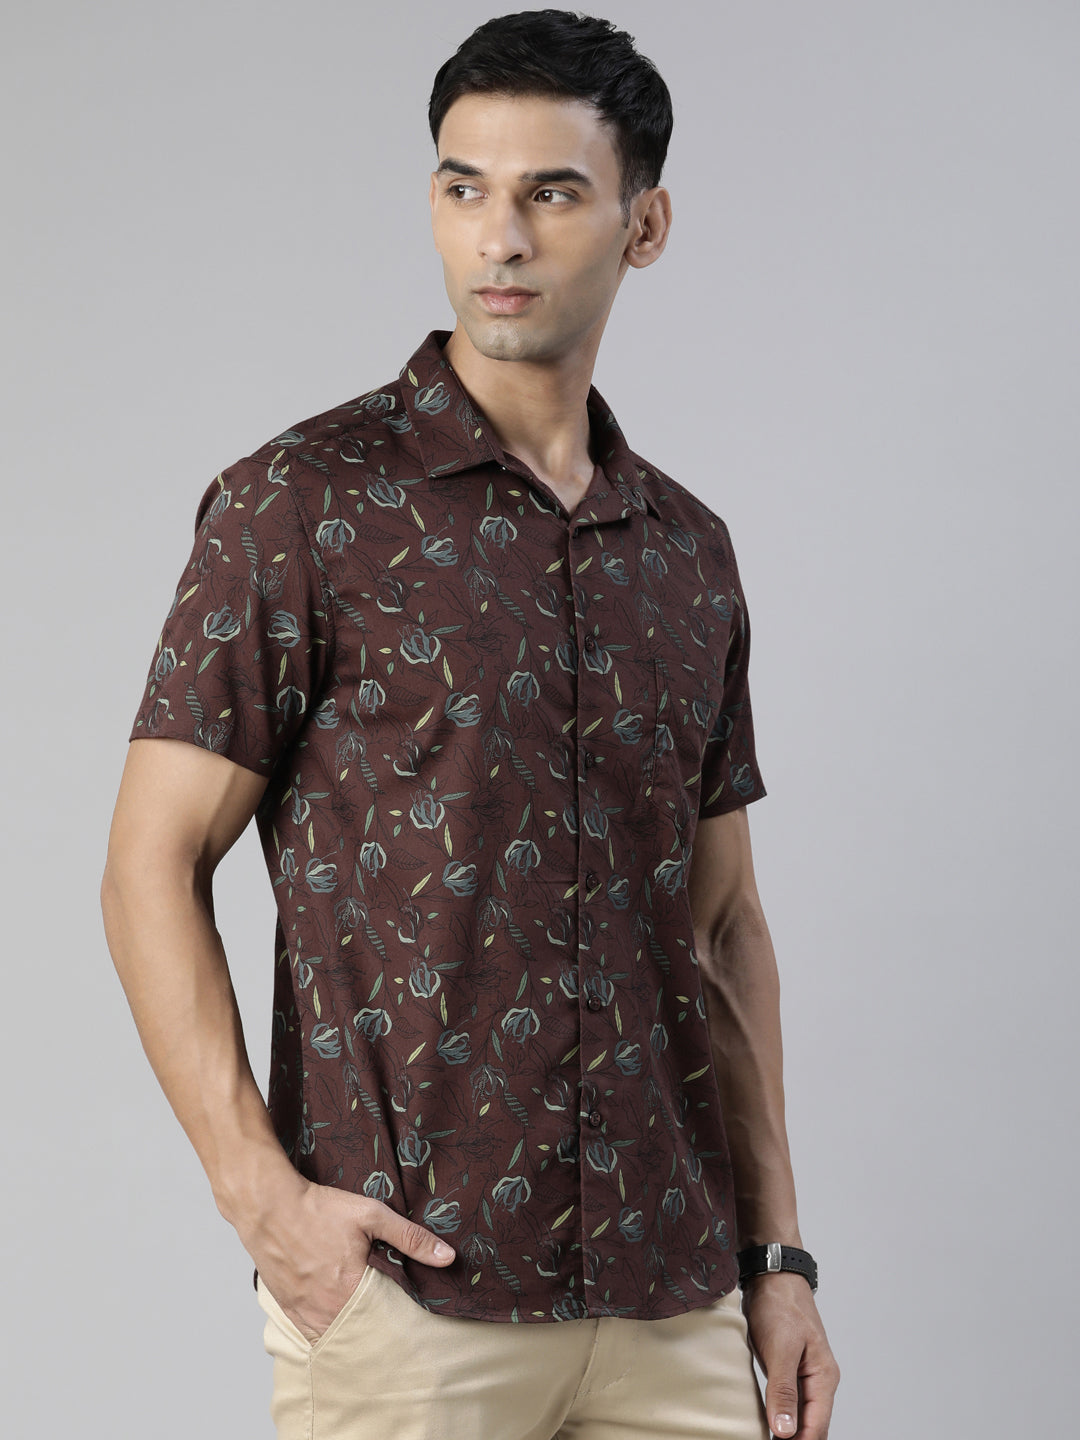 Maroon Printed Half Sleeves Shirt Printed Shirt Bushirt   